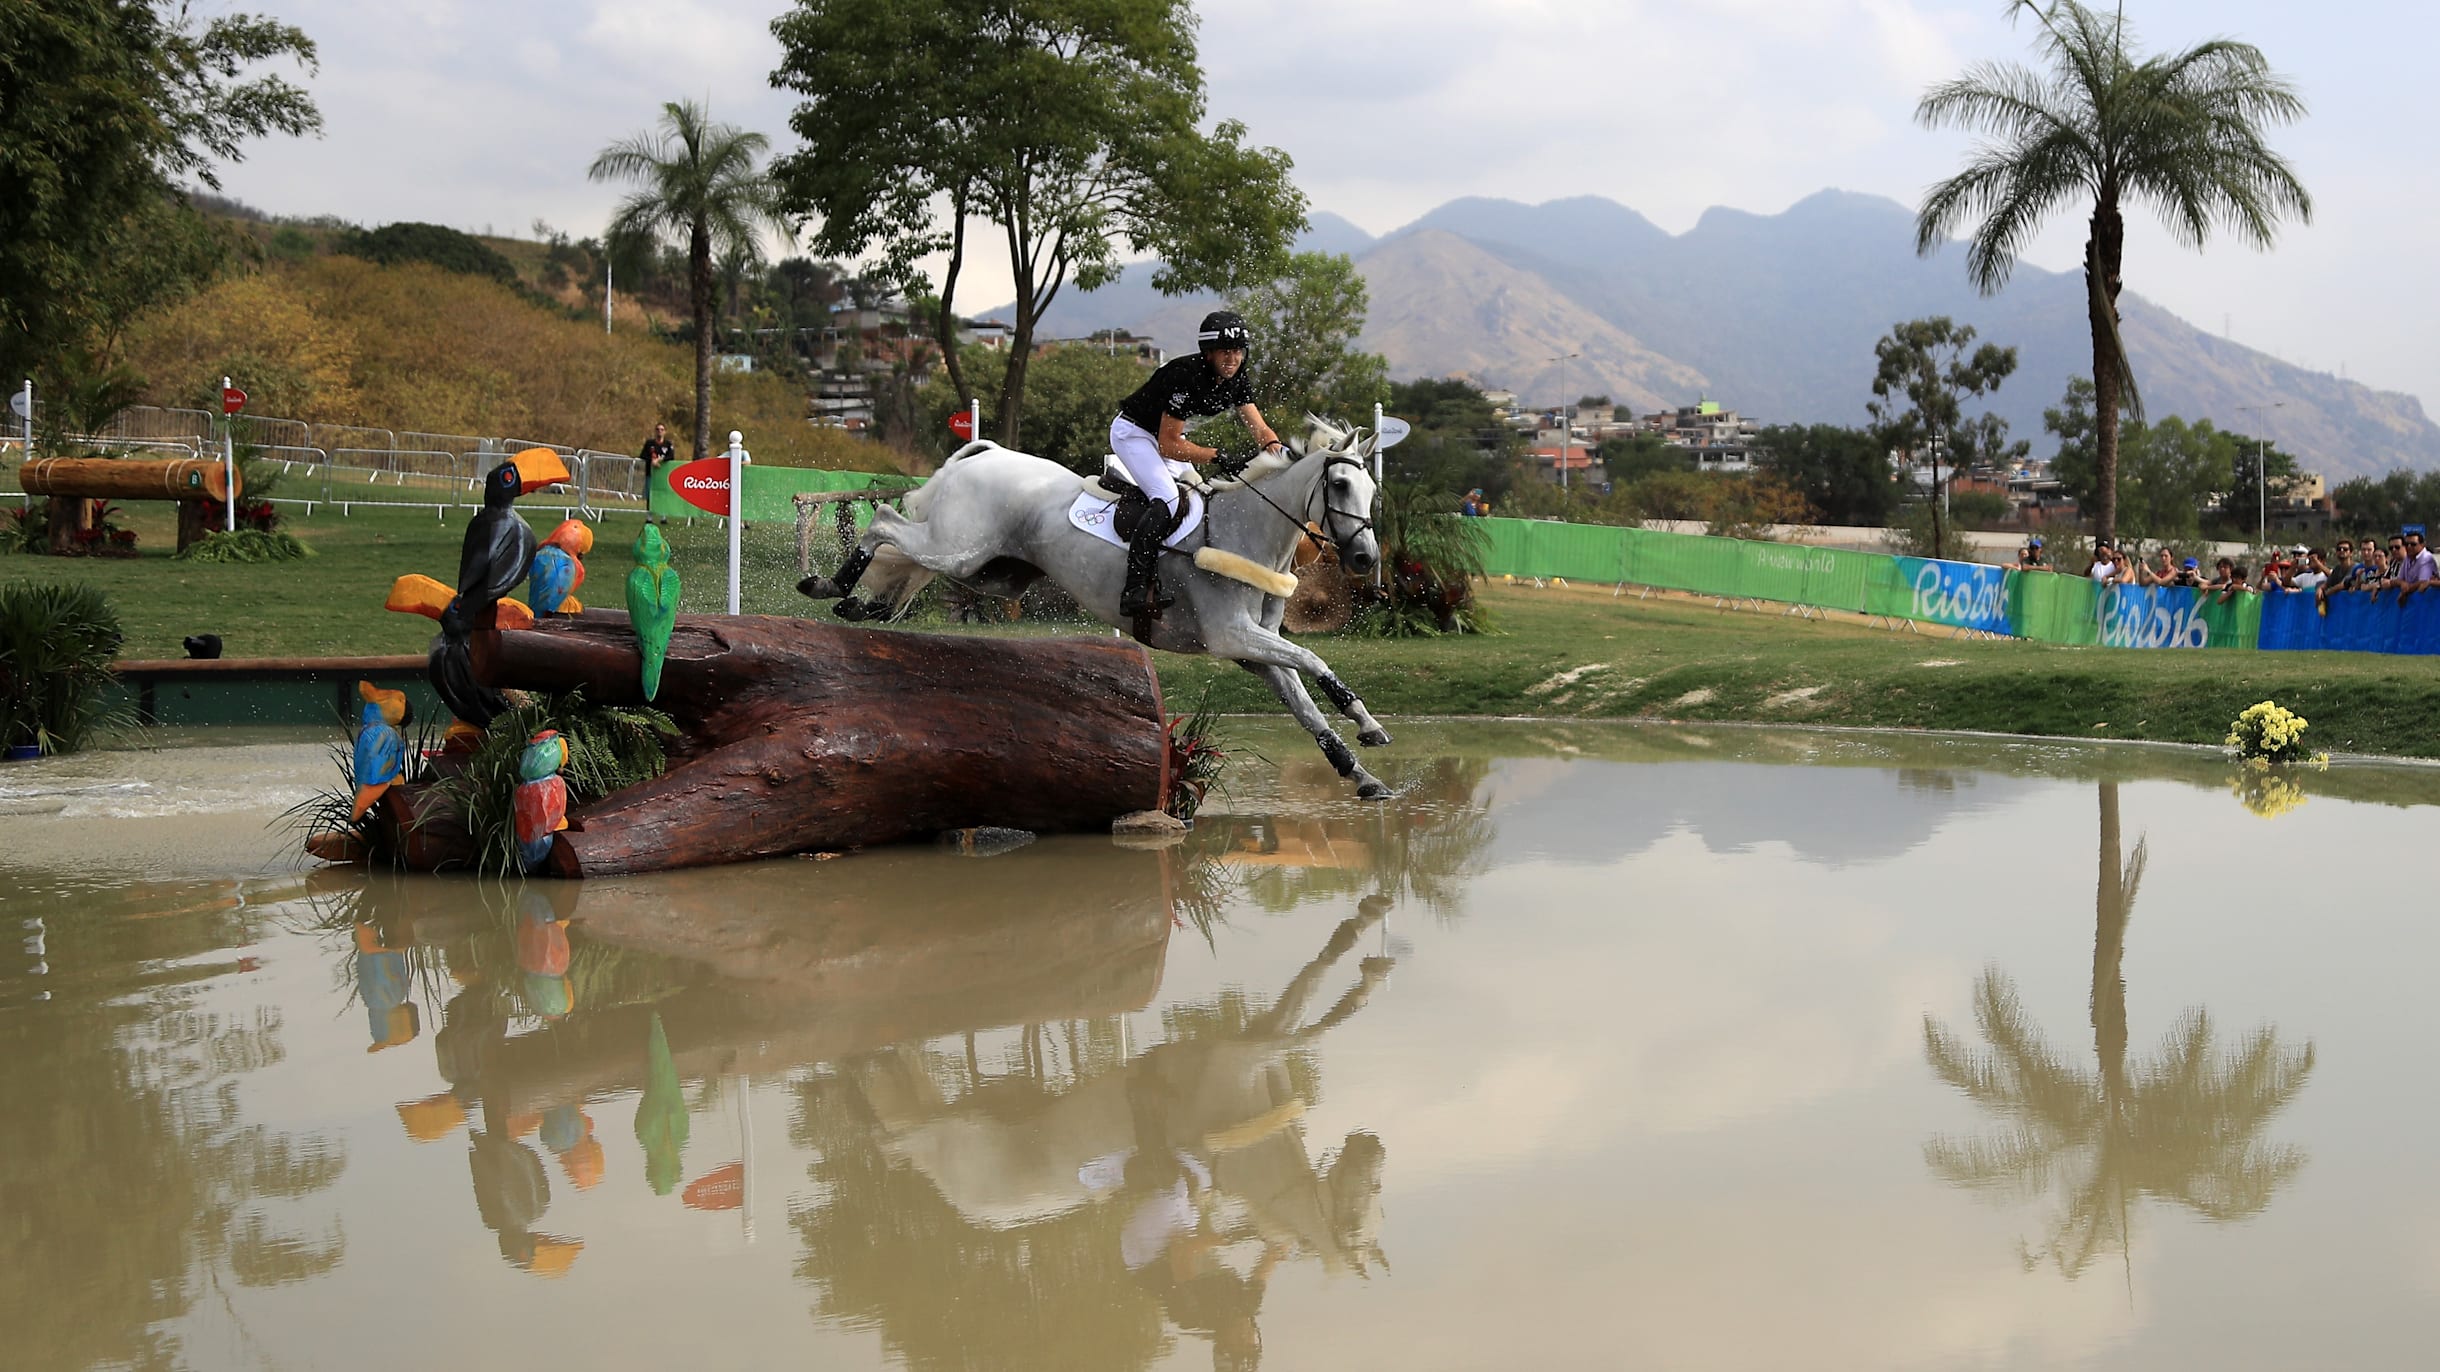 Jogos Olímpicos: cavalos sujeitos a rigorosas inspeções